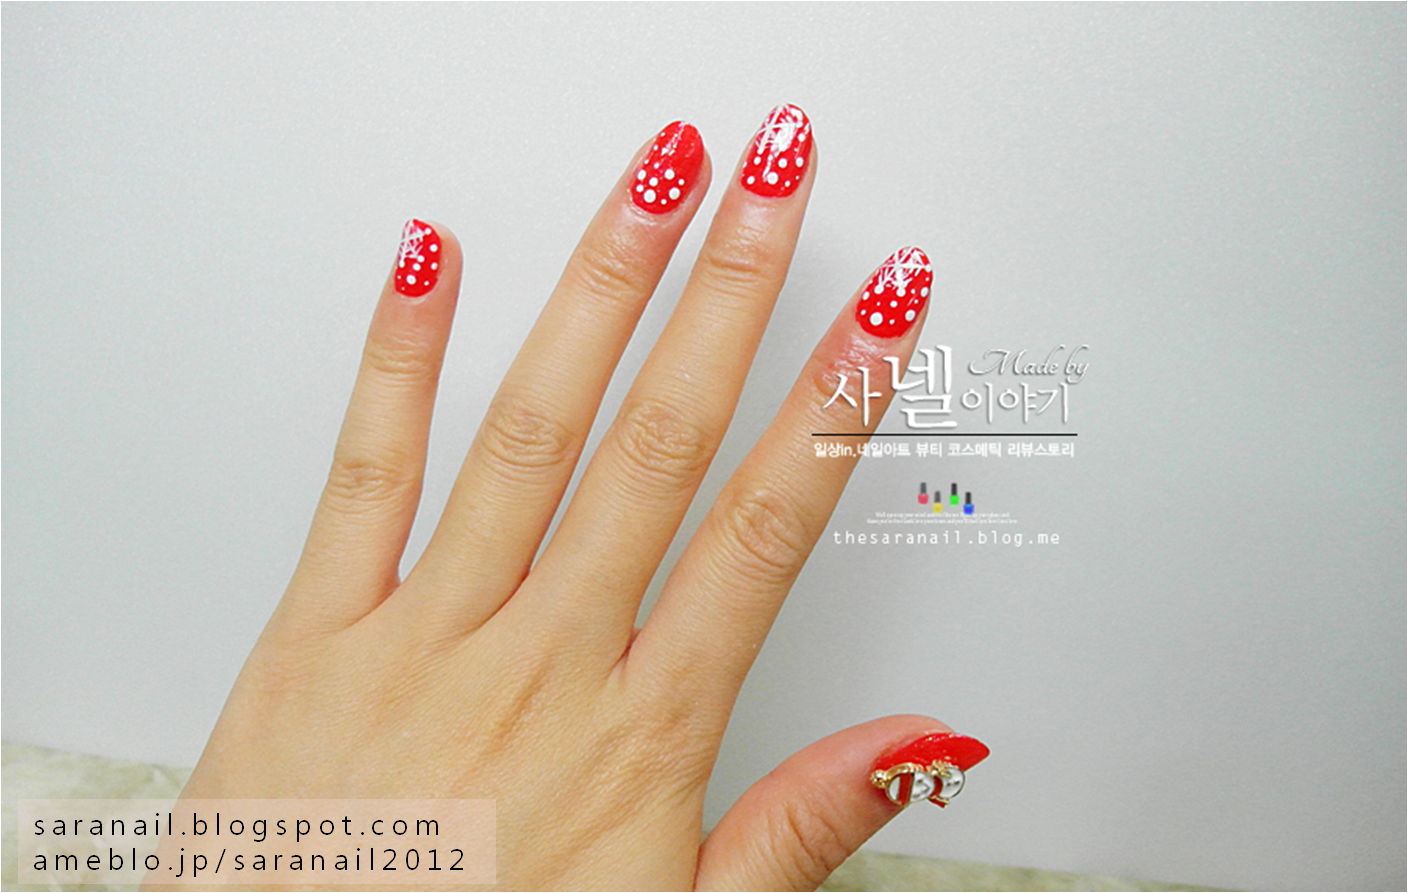 bright red nail polish color